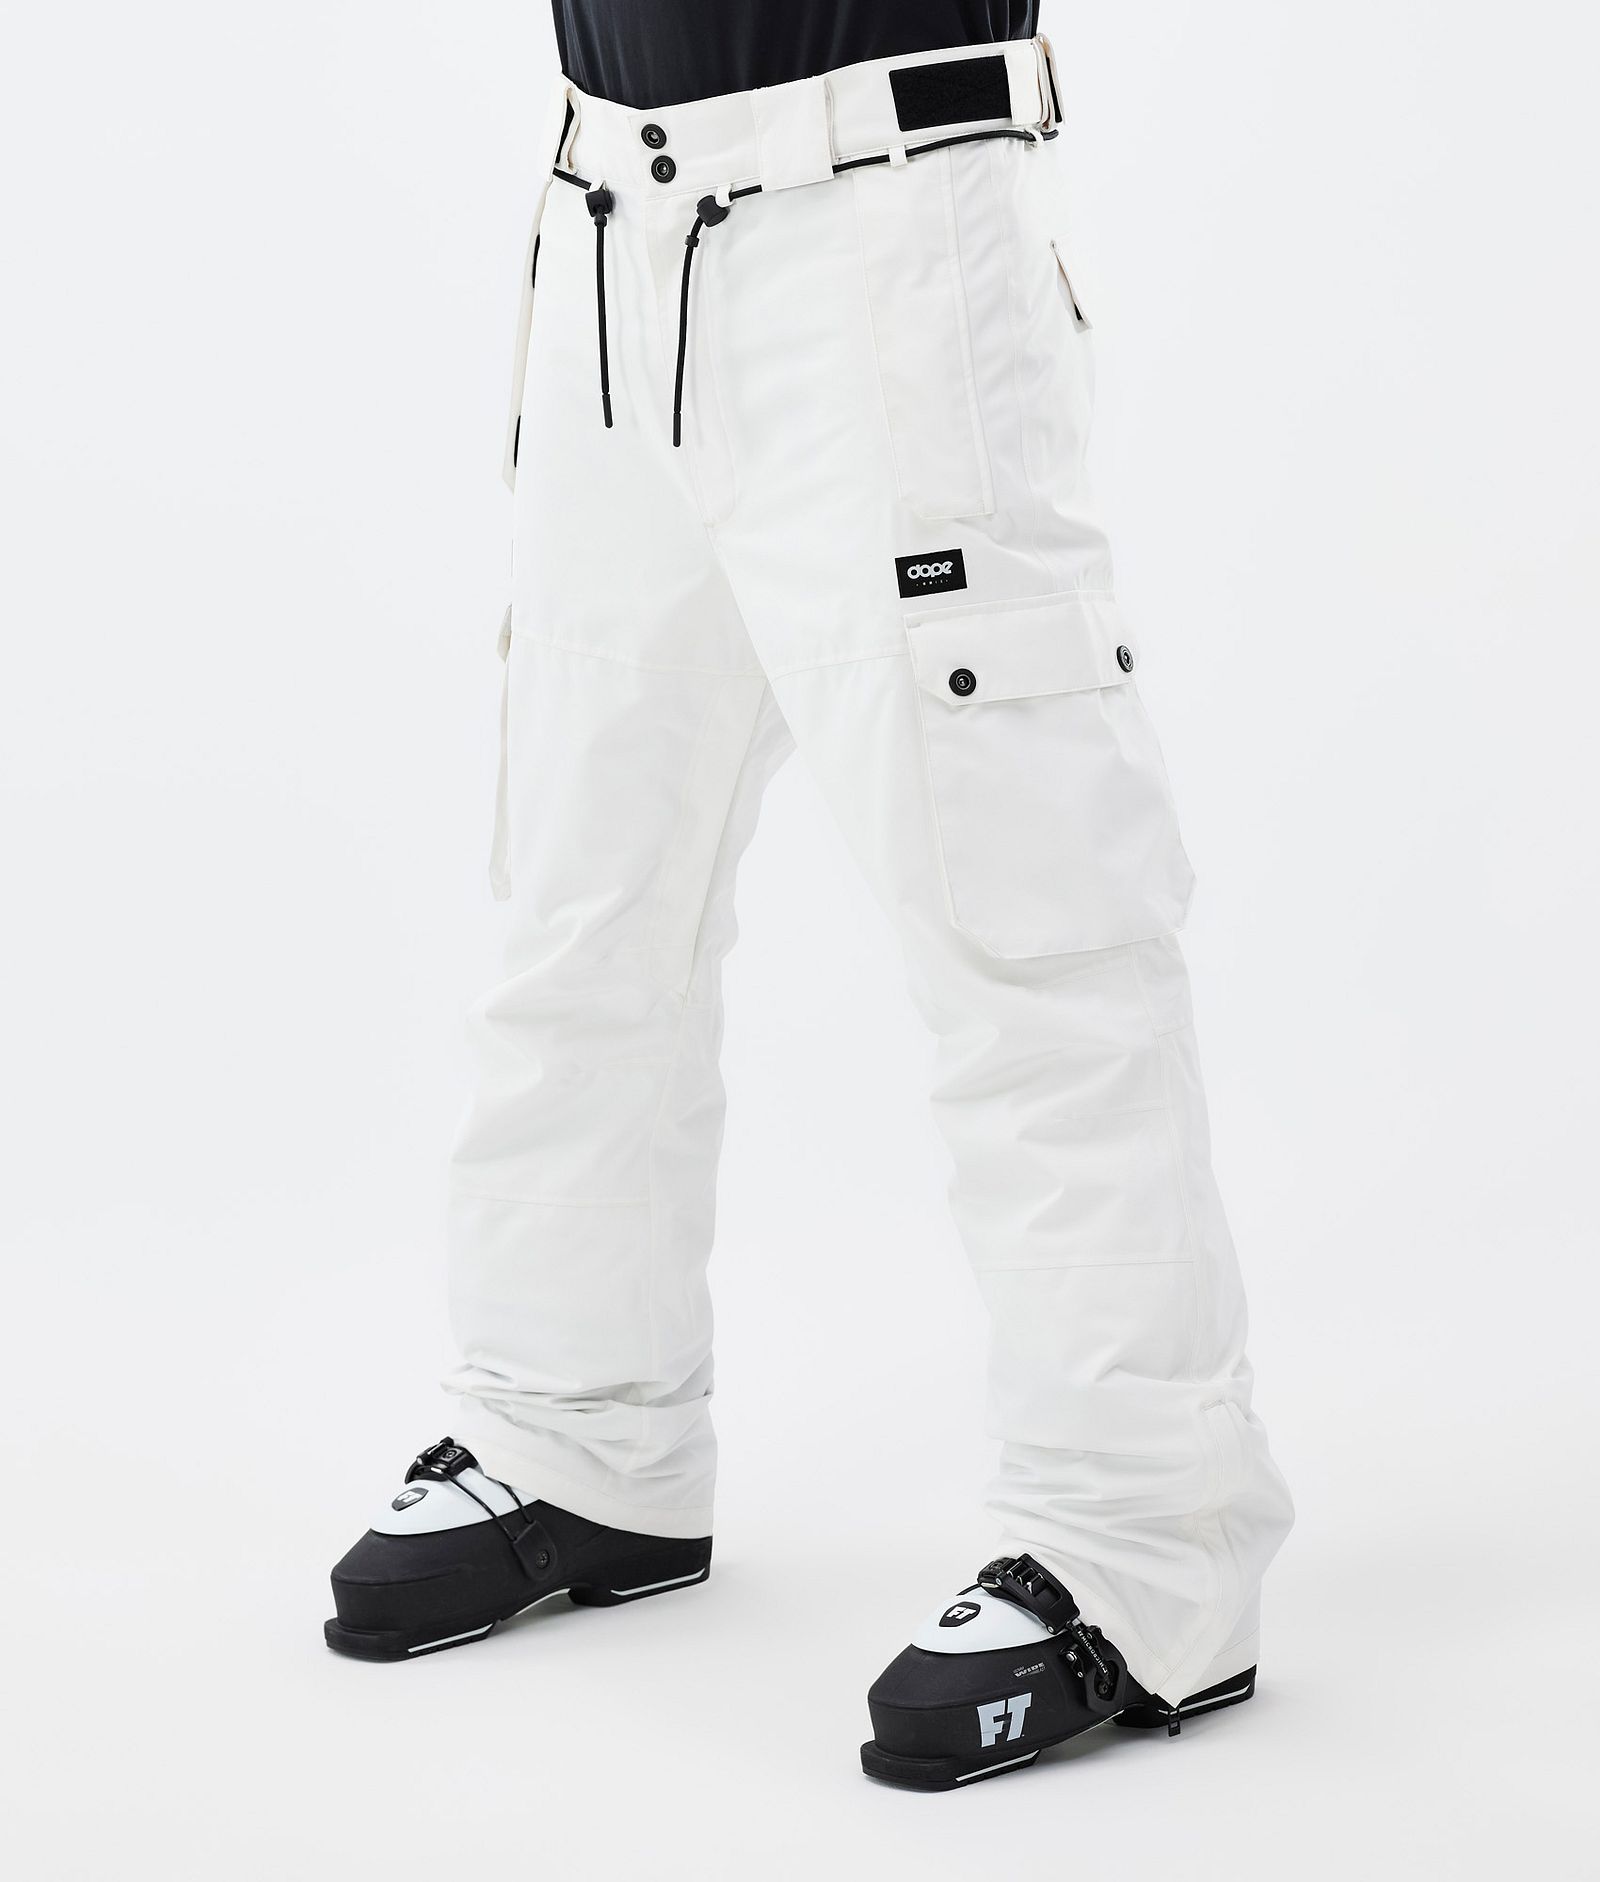 Dope Iconic Ski Pants Men Old White | Dopesnow.com